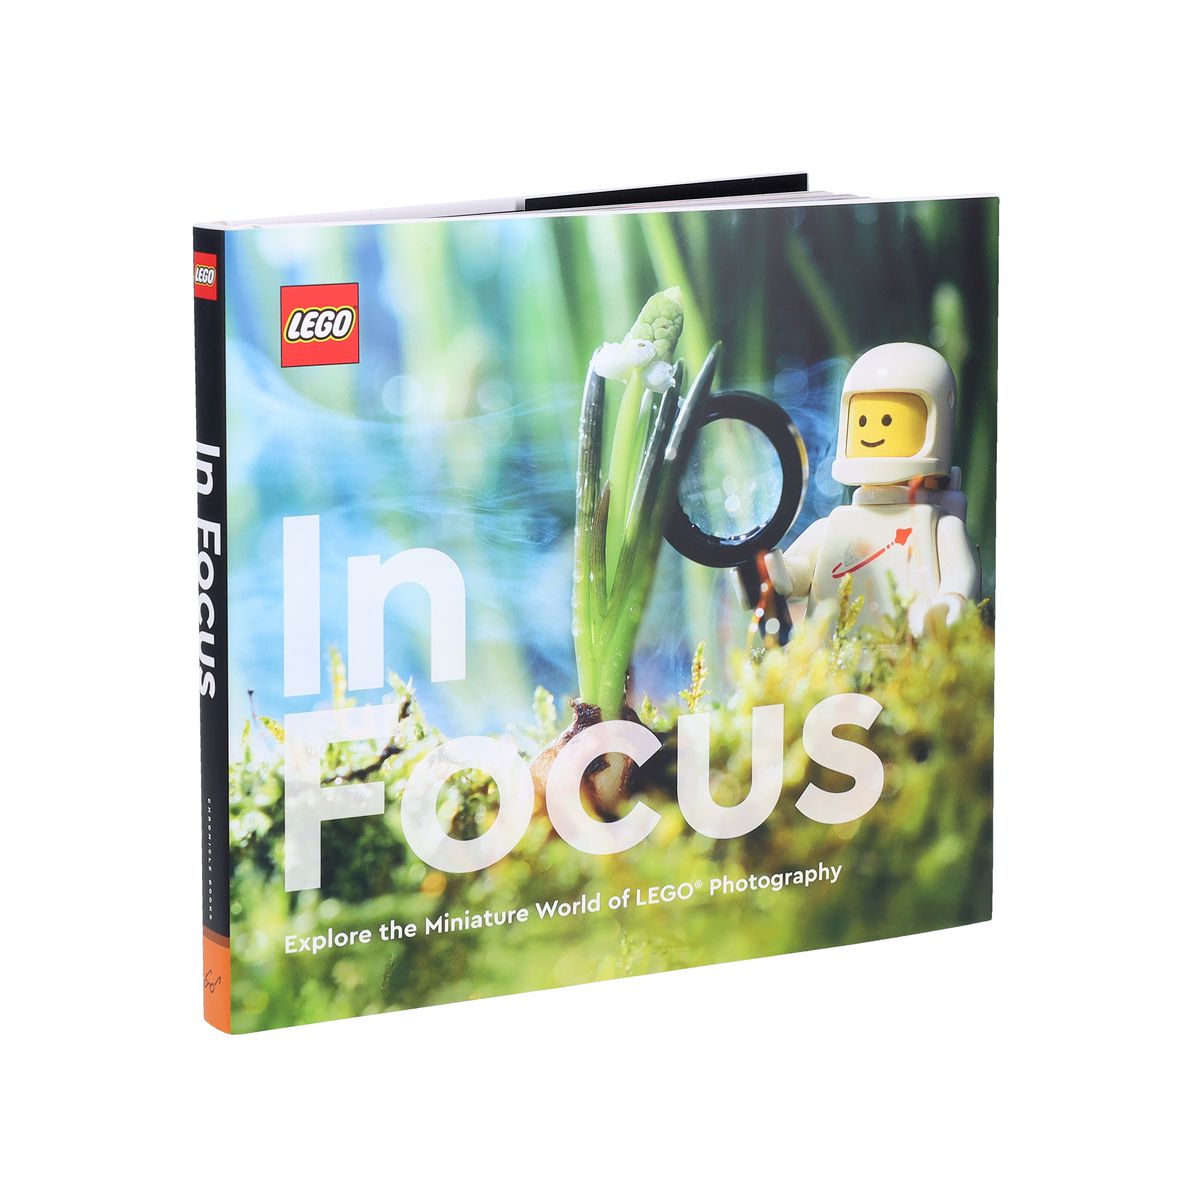 La copertina di Lego in Focus, con un elmetto spaziale che indossa un uomo in bianco con in mano una lente d'ingrandimento che guarda una piccola pianta